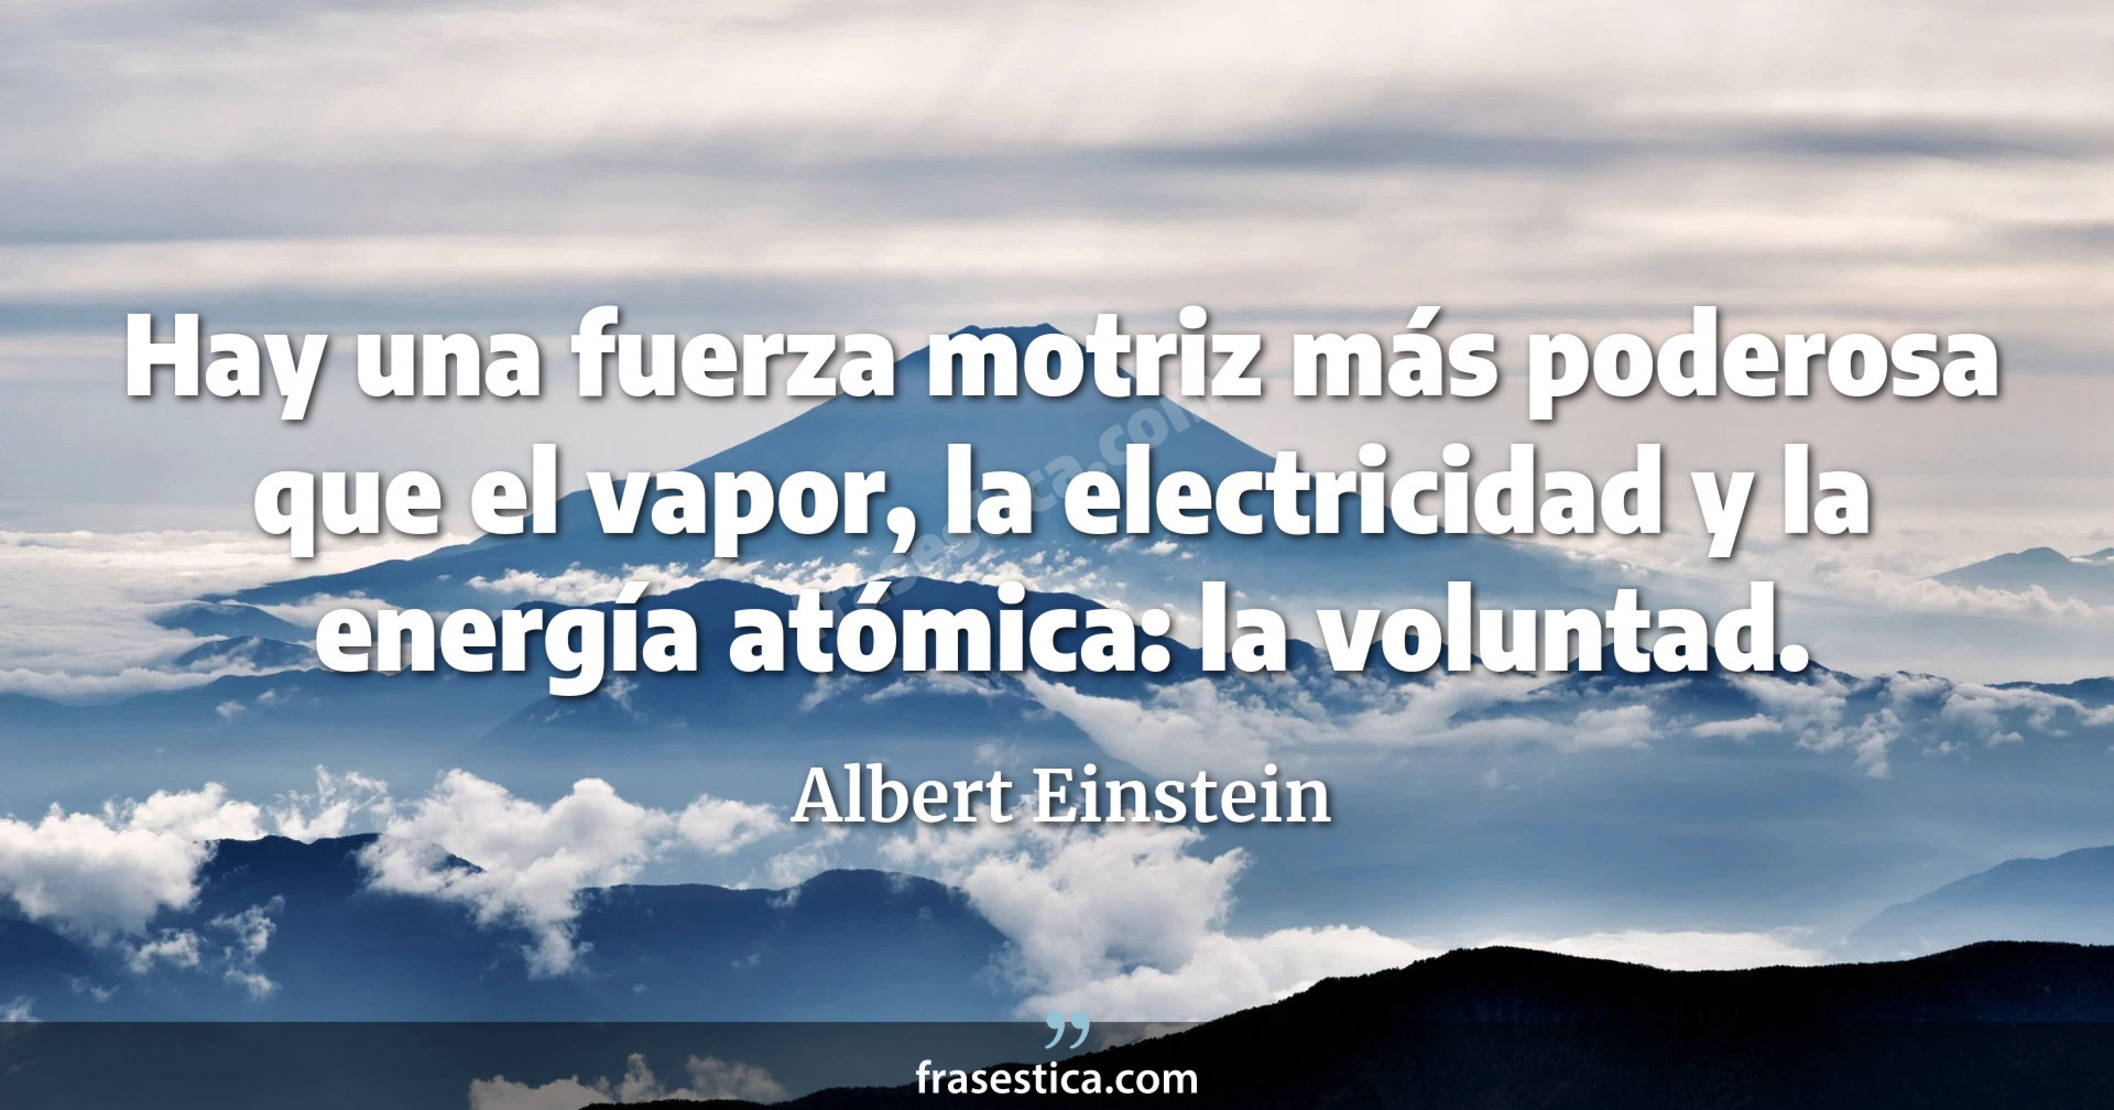 Hay una fuerza motriz más poderosa que el vapor, la electricidad y la energía atómica: la voluntad. - Albert Einstein